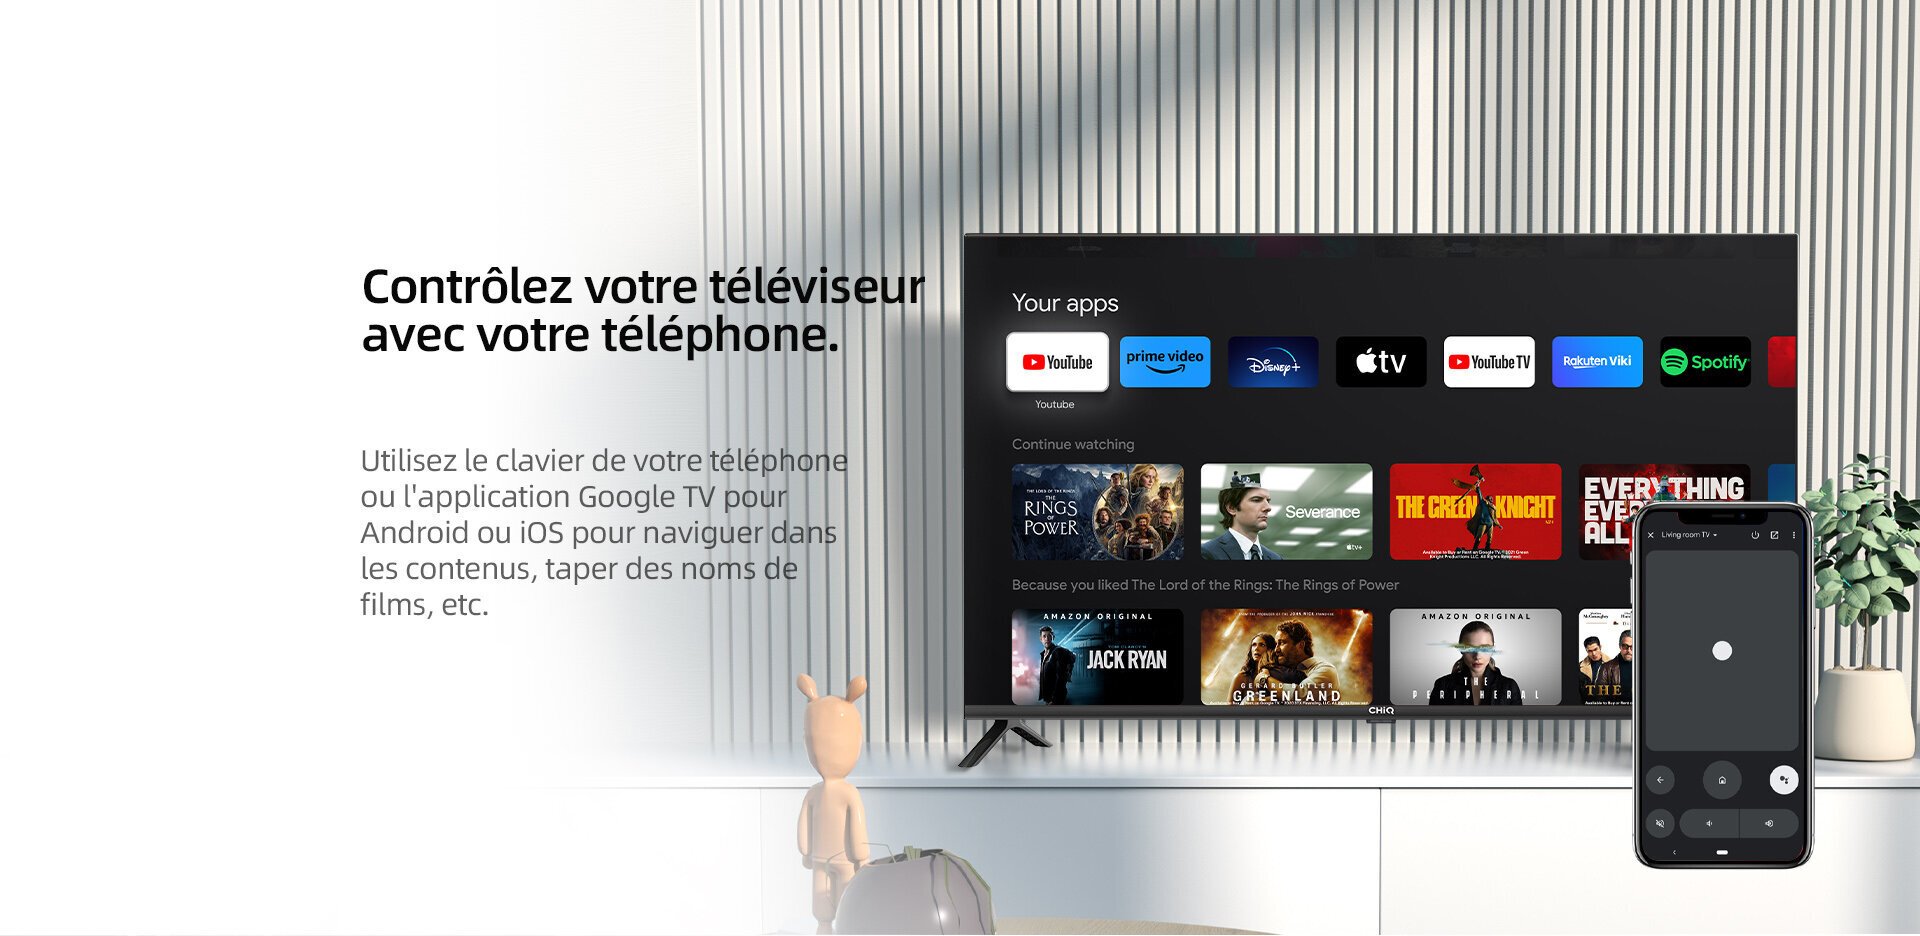 ORIGINAL CHIQ TÉLÉCOMMANDE TV pour L40G7U L40H7SX / Éprouvé EUR 18,59 -  PicClick FR